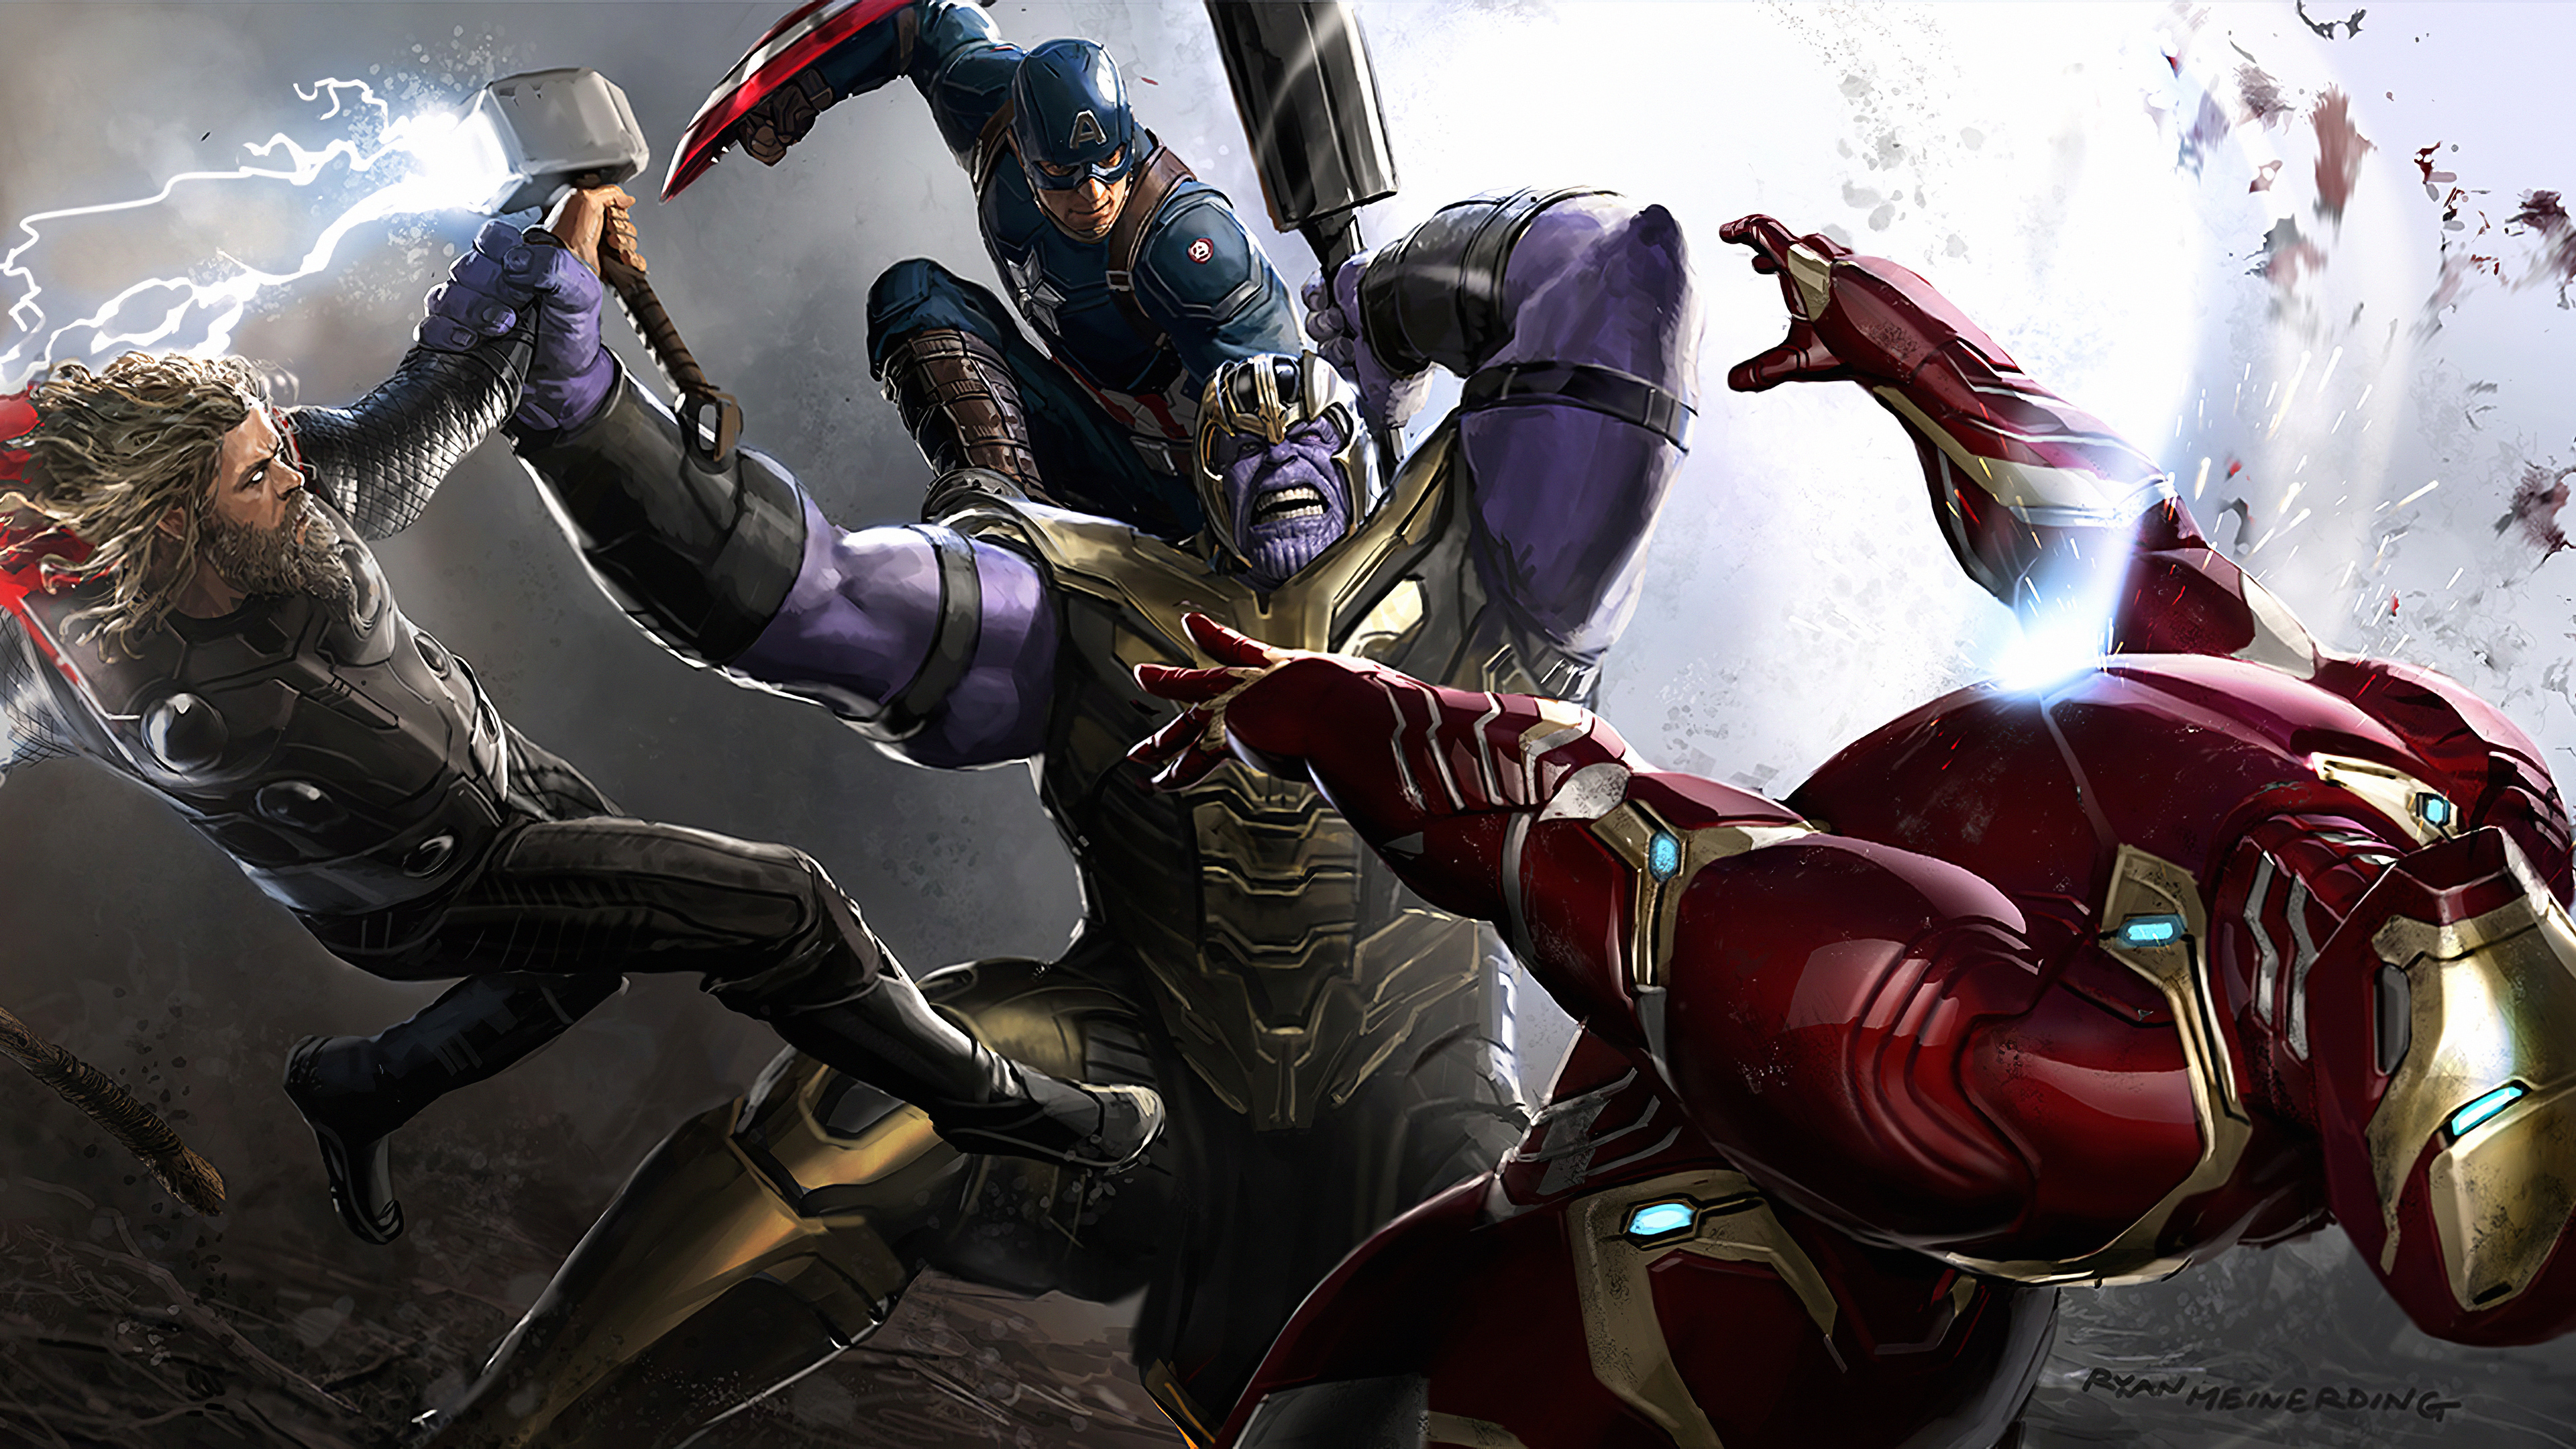 Descarga gratuita de fondo de pantalla para móvil de Los Vengadores, Películas, Hombre De Acero, Capitan América, Thor, Thanos, Vengadores: Endgame.